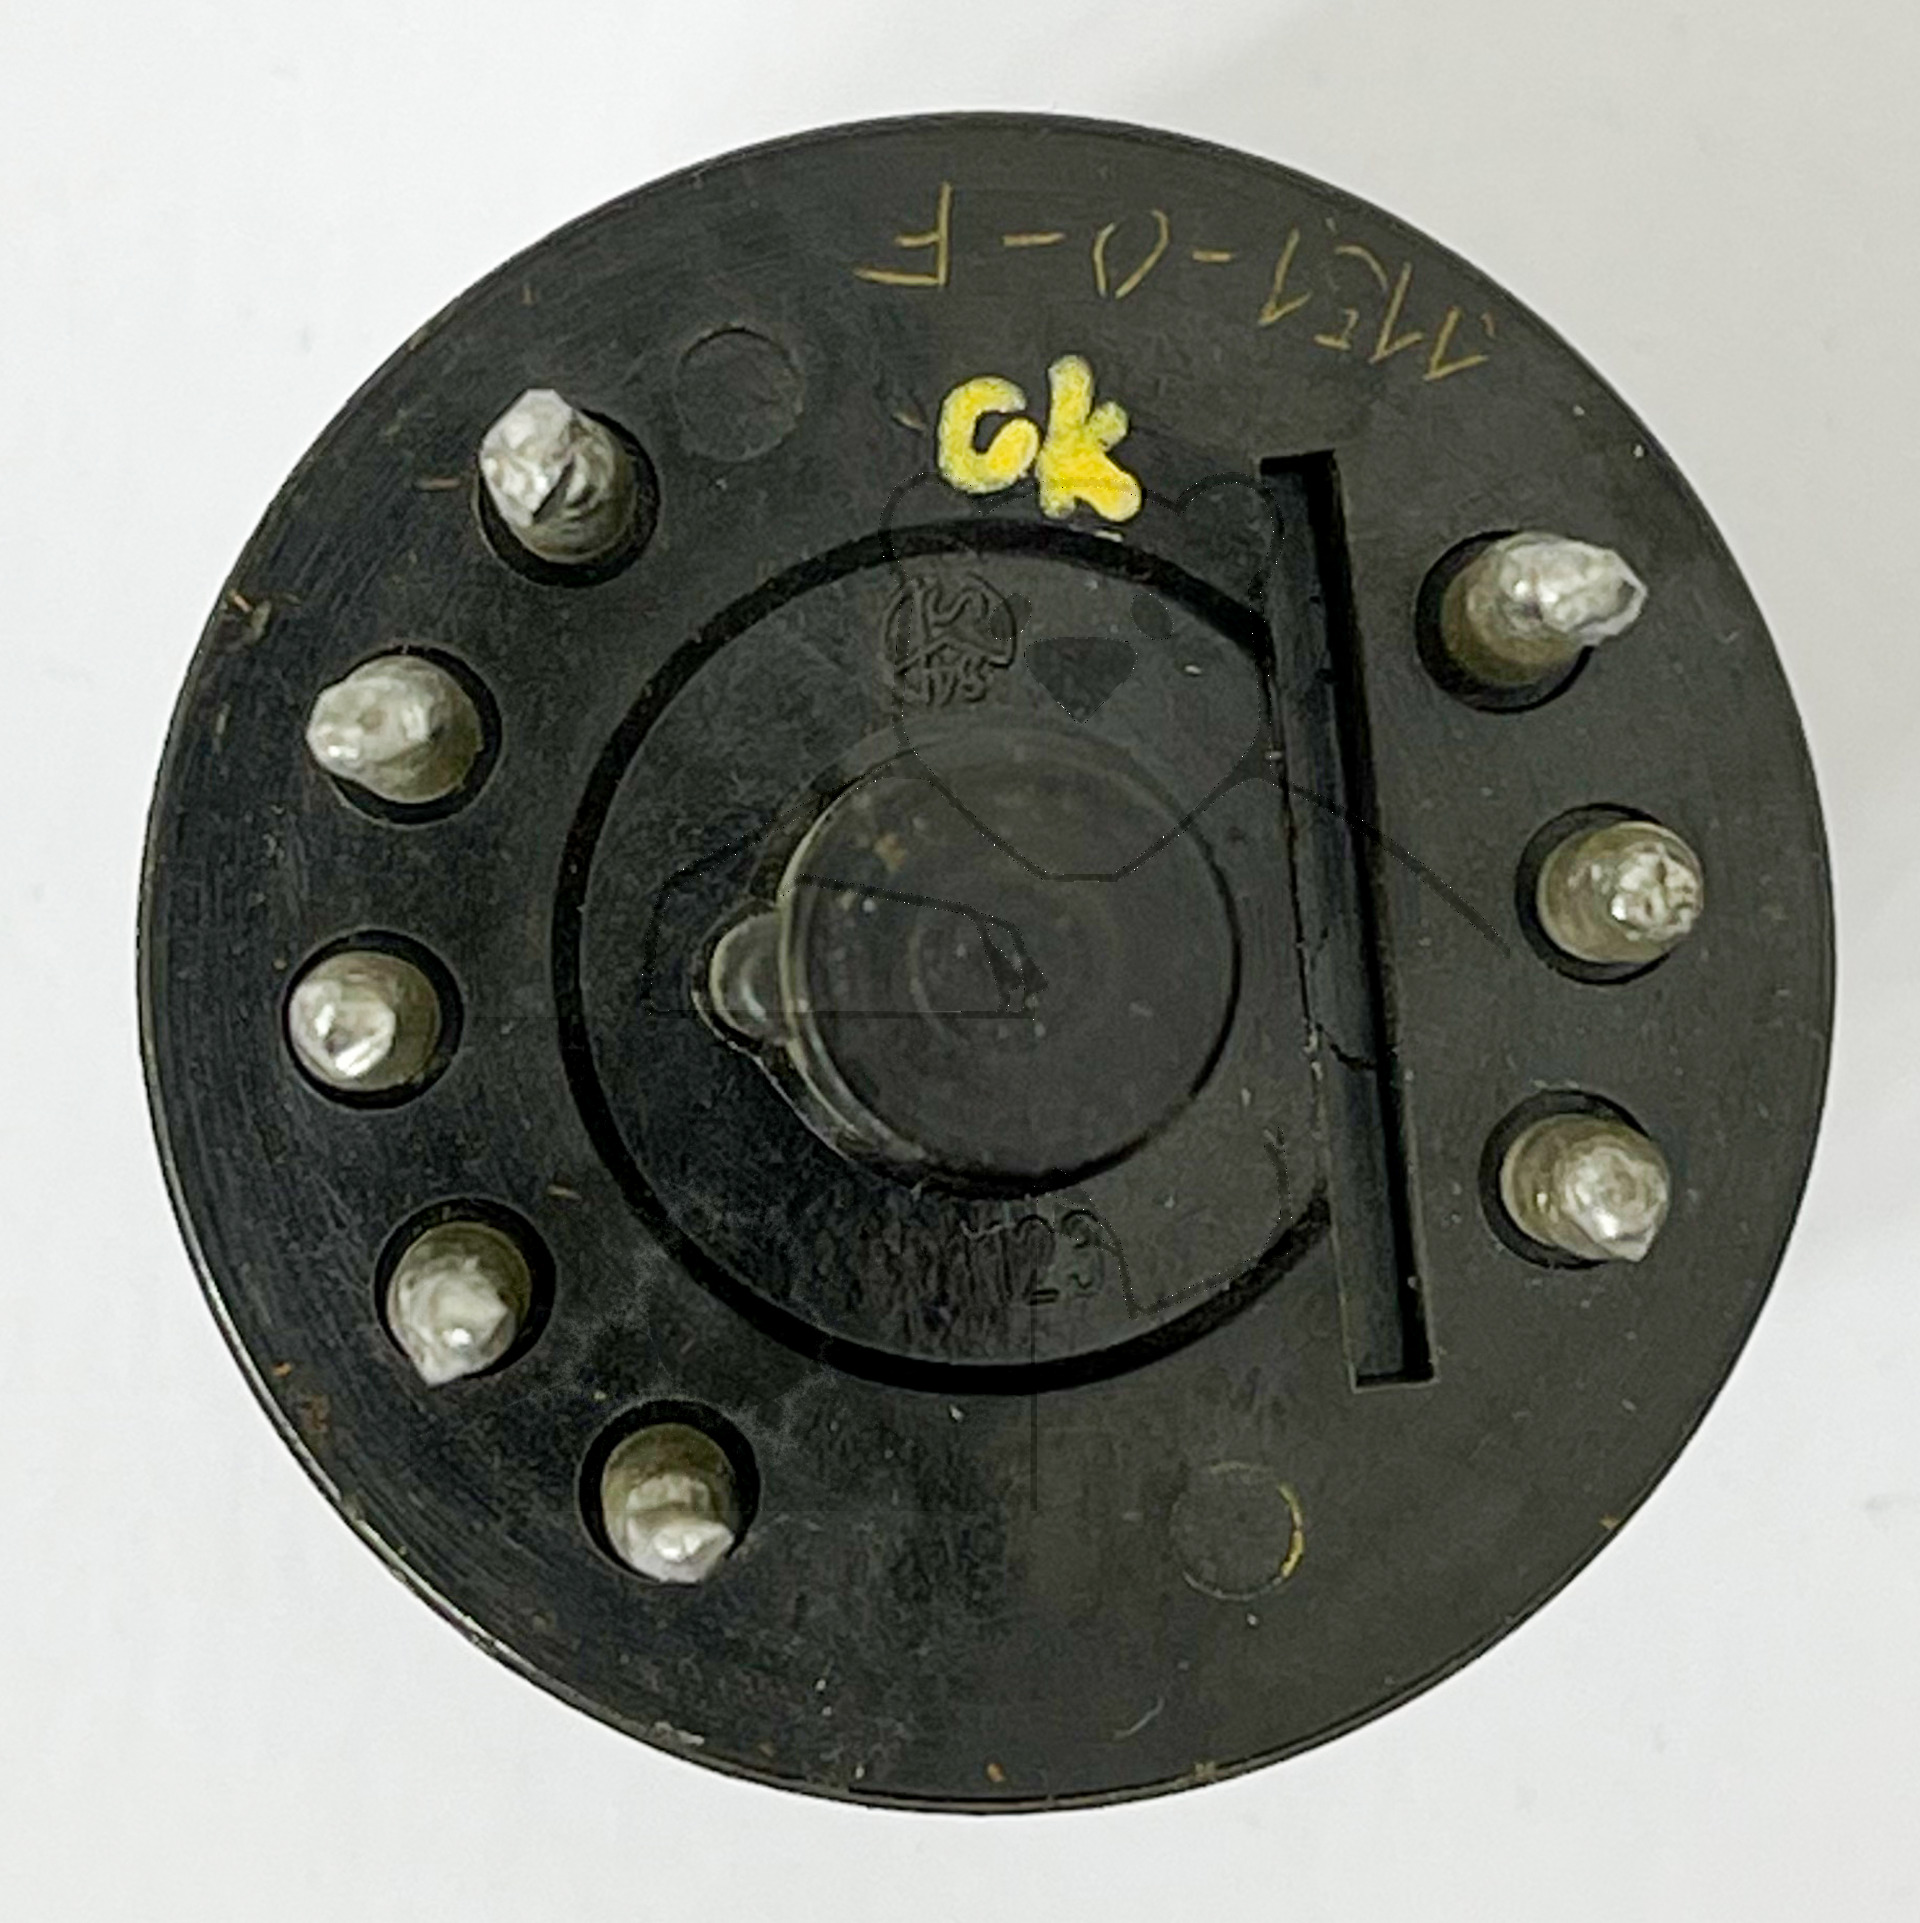 Röhre KT211 (Stahlröhrensockel, 8pol) #8401 Bild 4 - Sockel